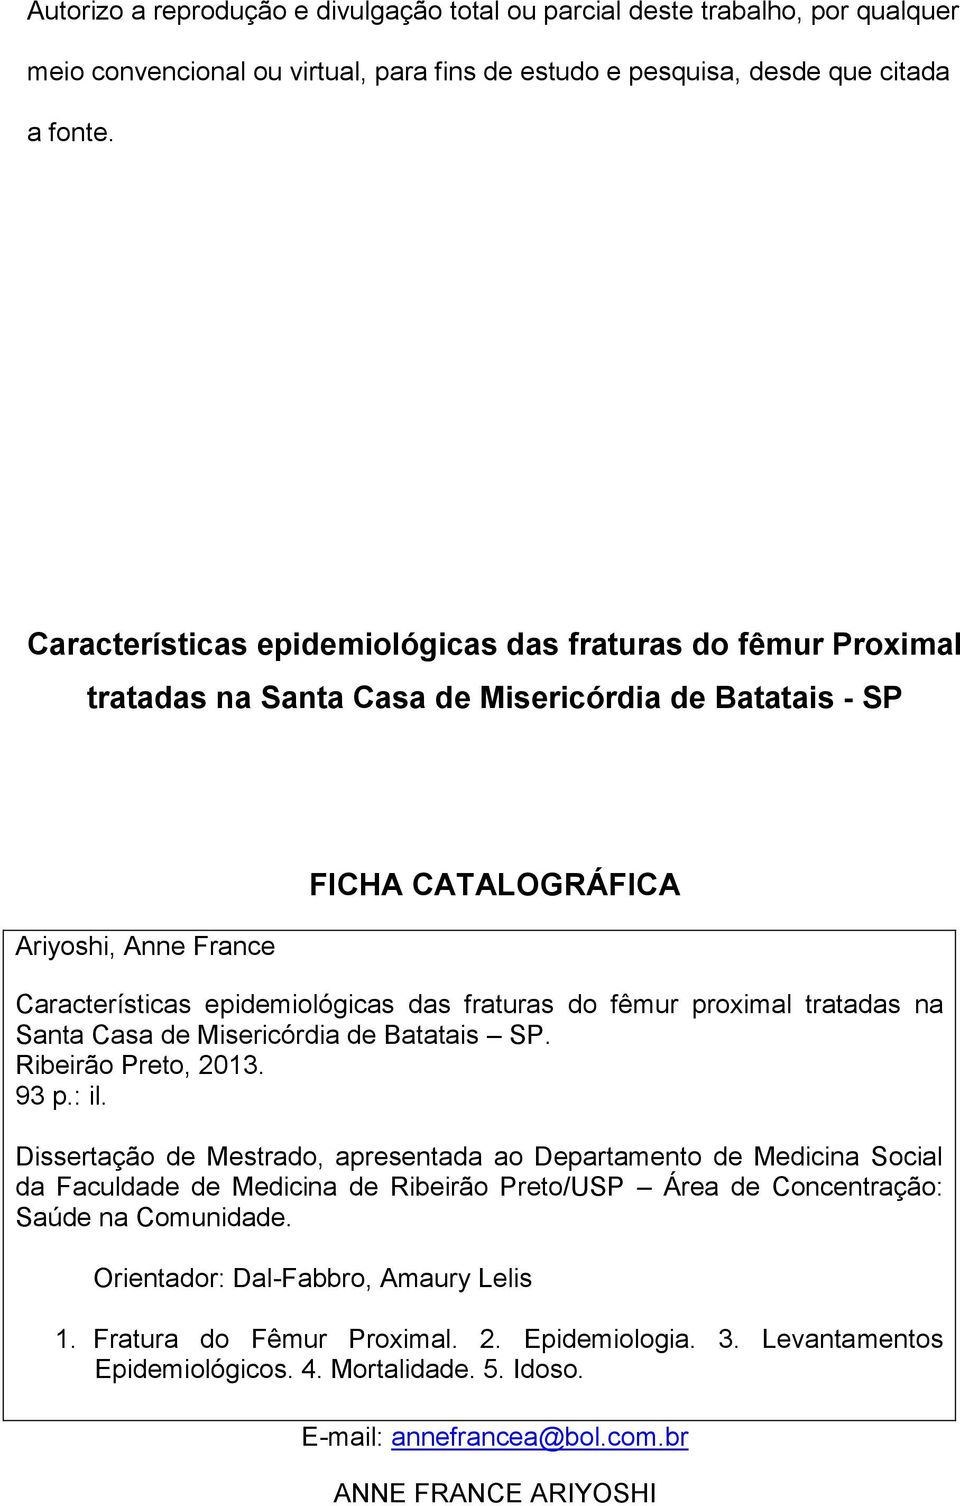 fraturas do fêmur proximal tratadas na Santa Casa de Misericórdia de Batatais SP. Ribeirão Preto, 2013. 93 p.: il.